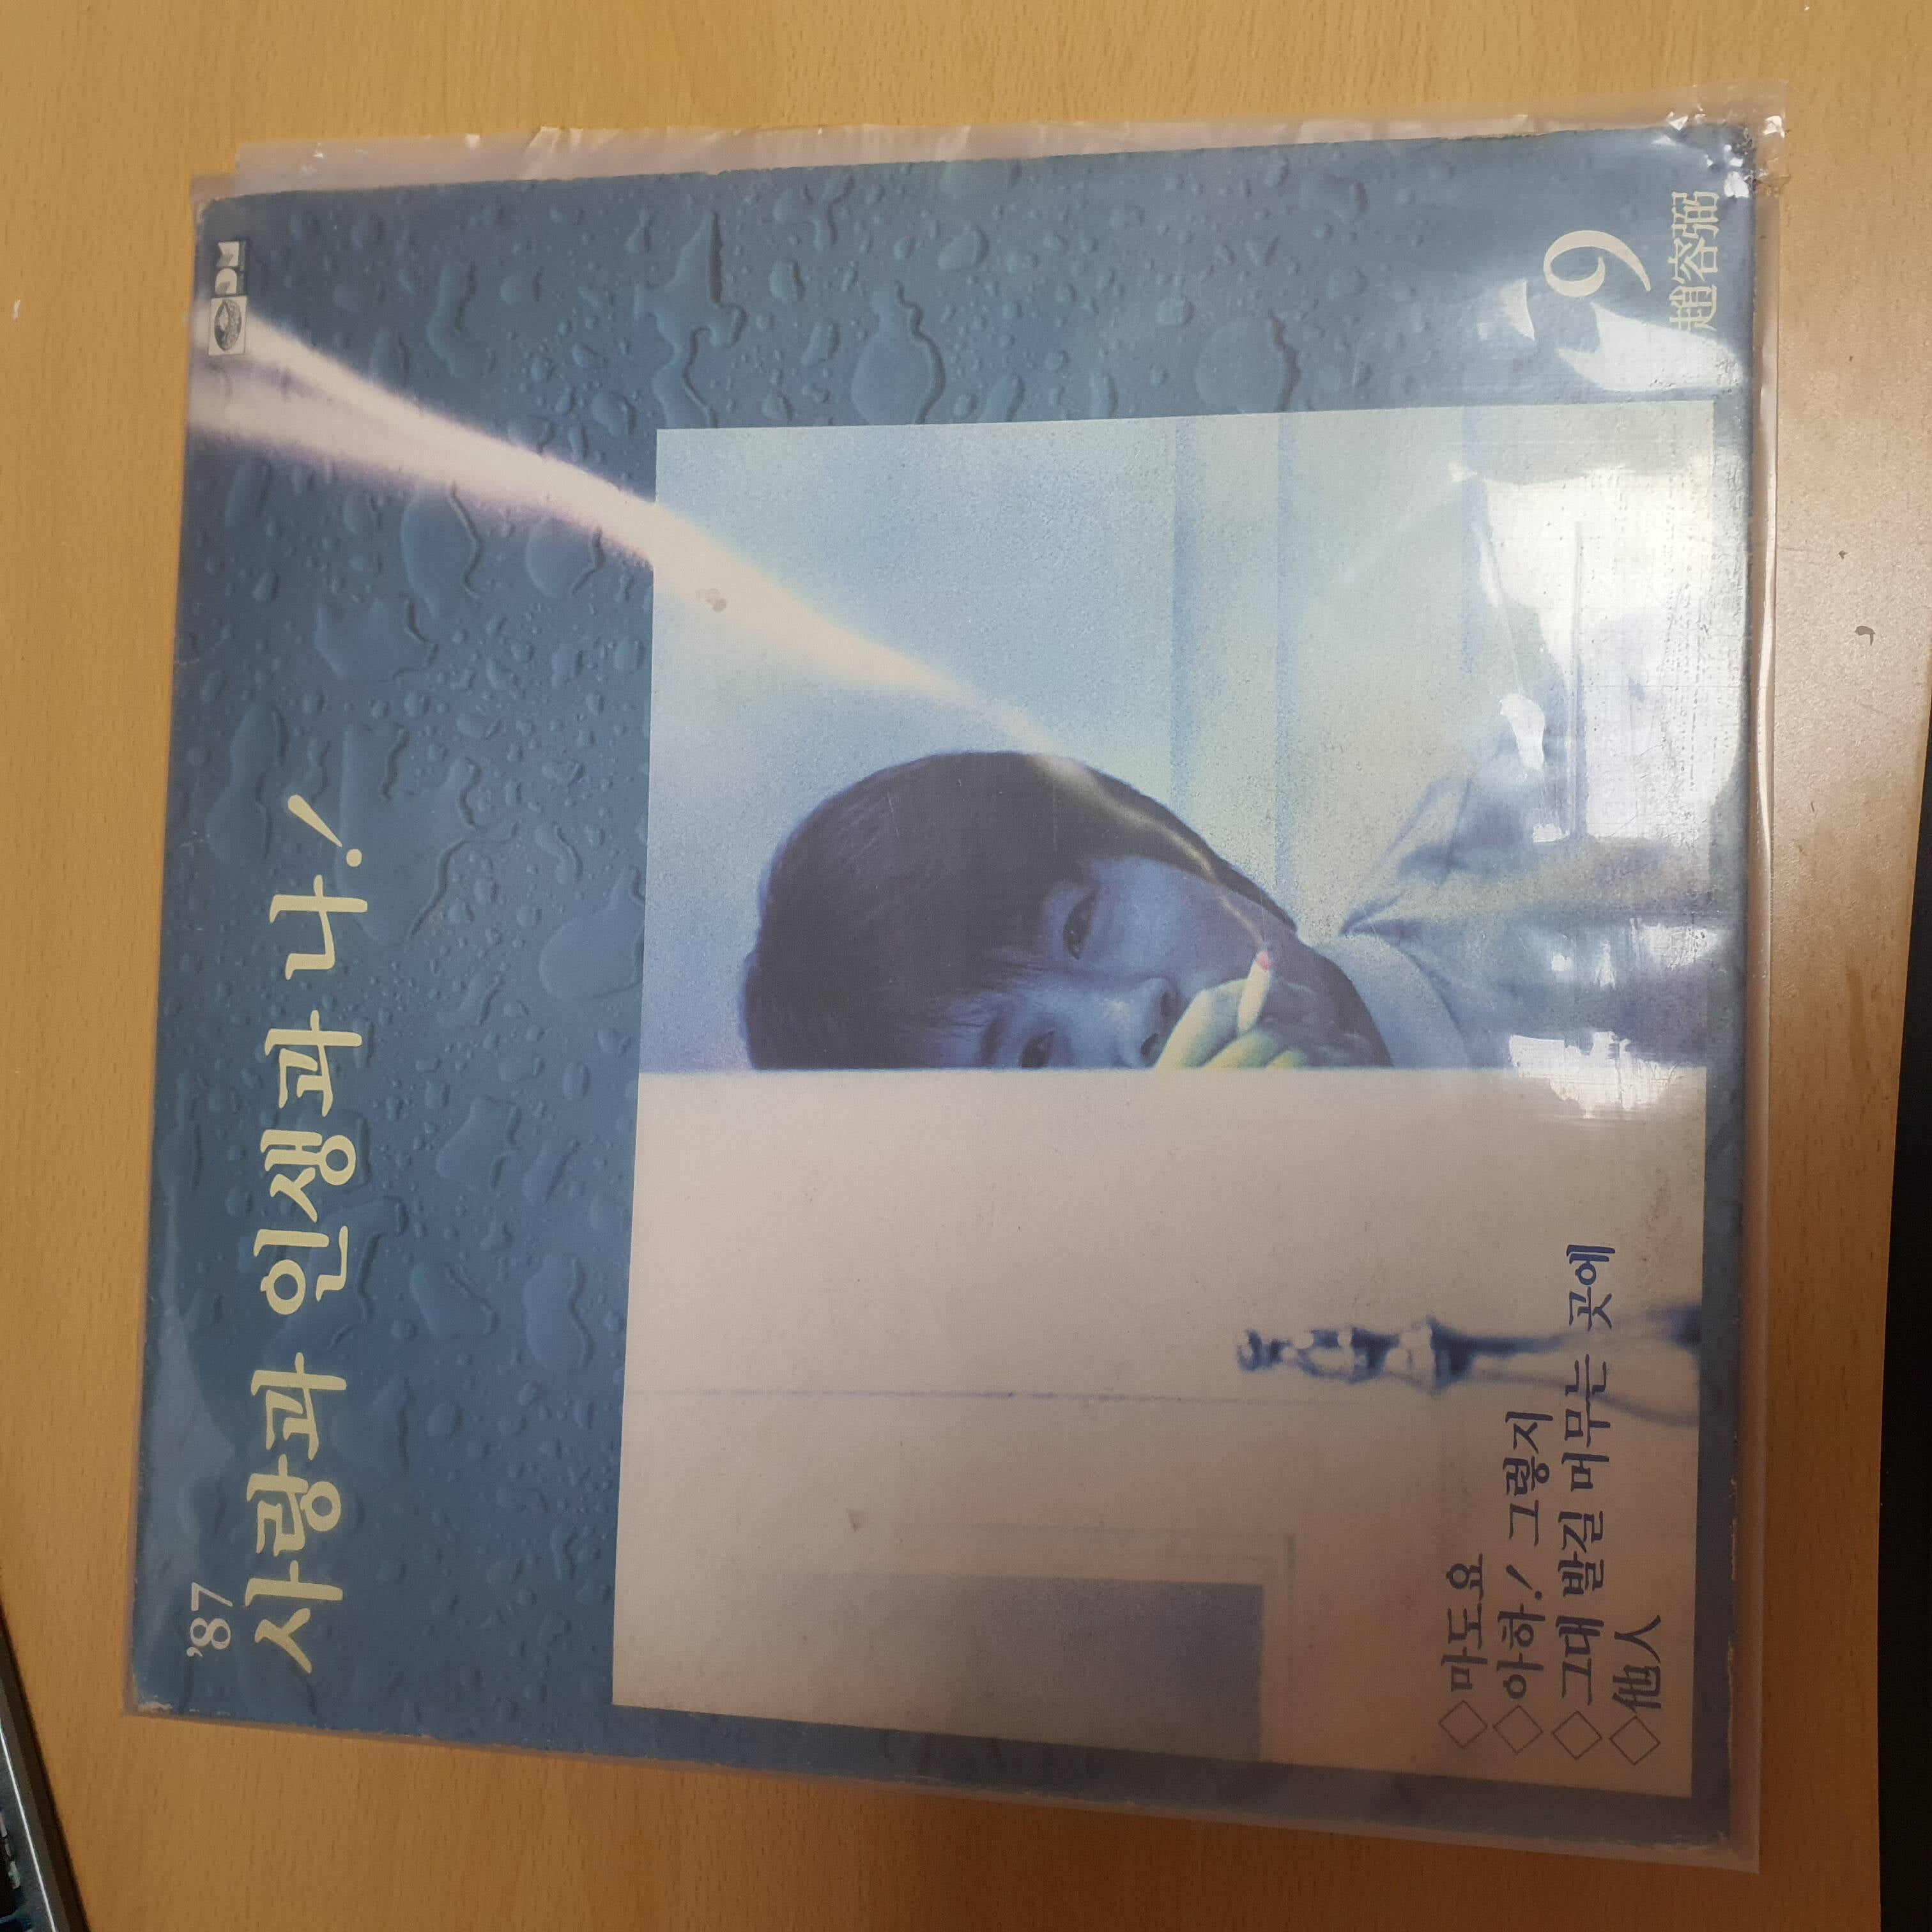 조용필 / 09집 사랑과 인생과 나, 마도요 [LP] (1987년 5.10 제작)